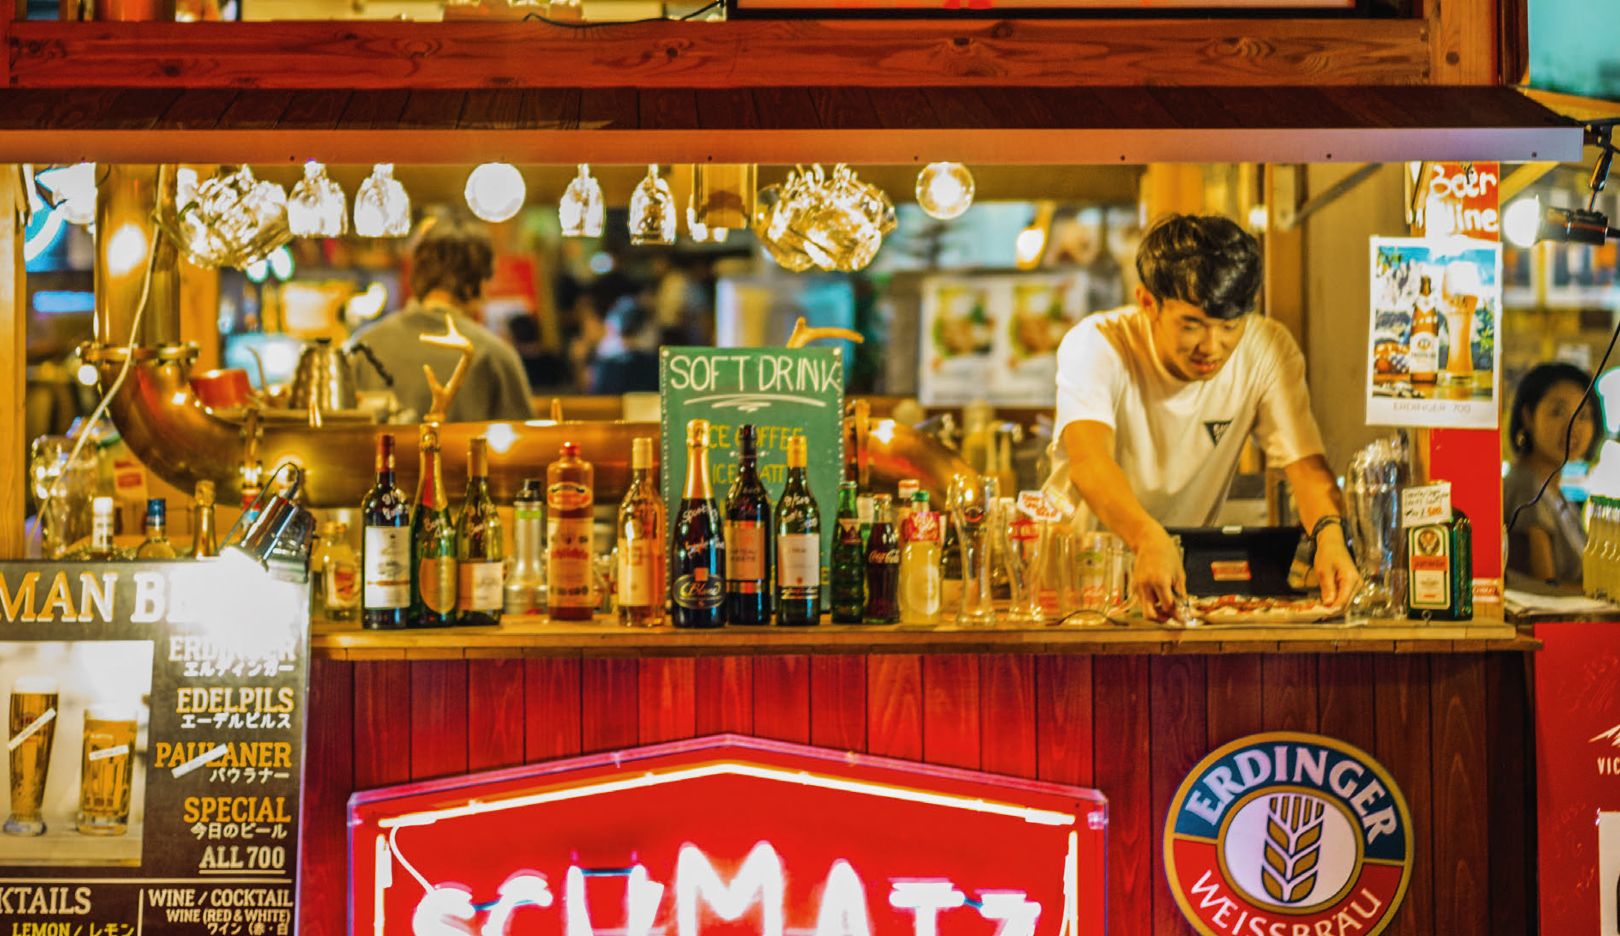 ビアダイニング「シュマッツ」：アンドレ・ロッテラーが東京で見つけたお店。故郷が恋しくなった時は ここでシュニッツェルバーガーやソーセージ、ドイツ製のビールを堪能し、ホームシックを紛らわせた